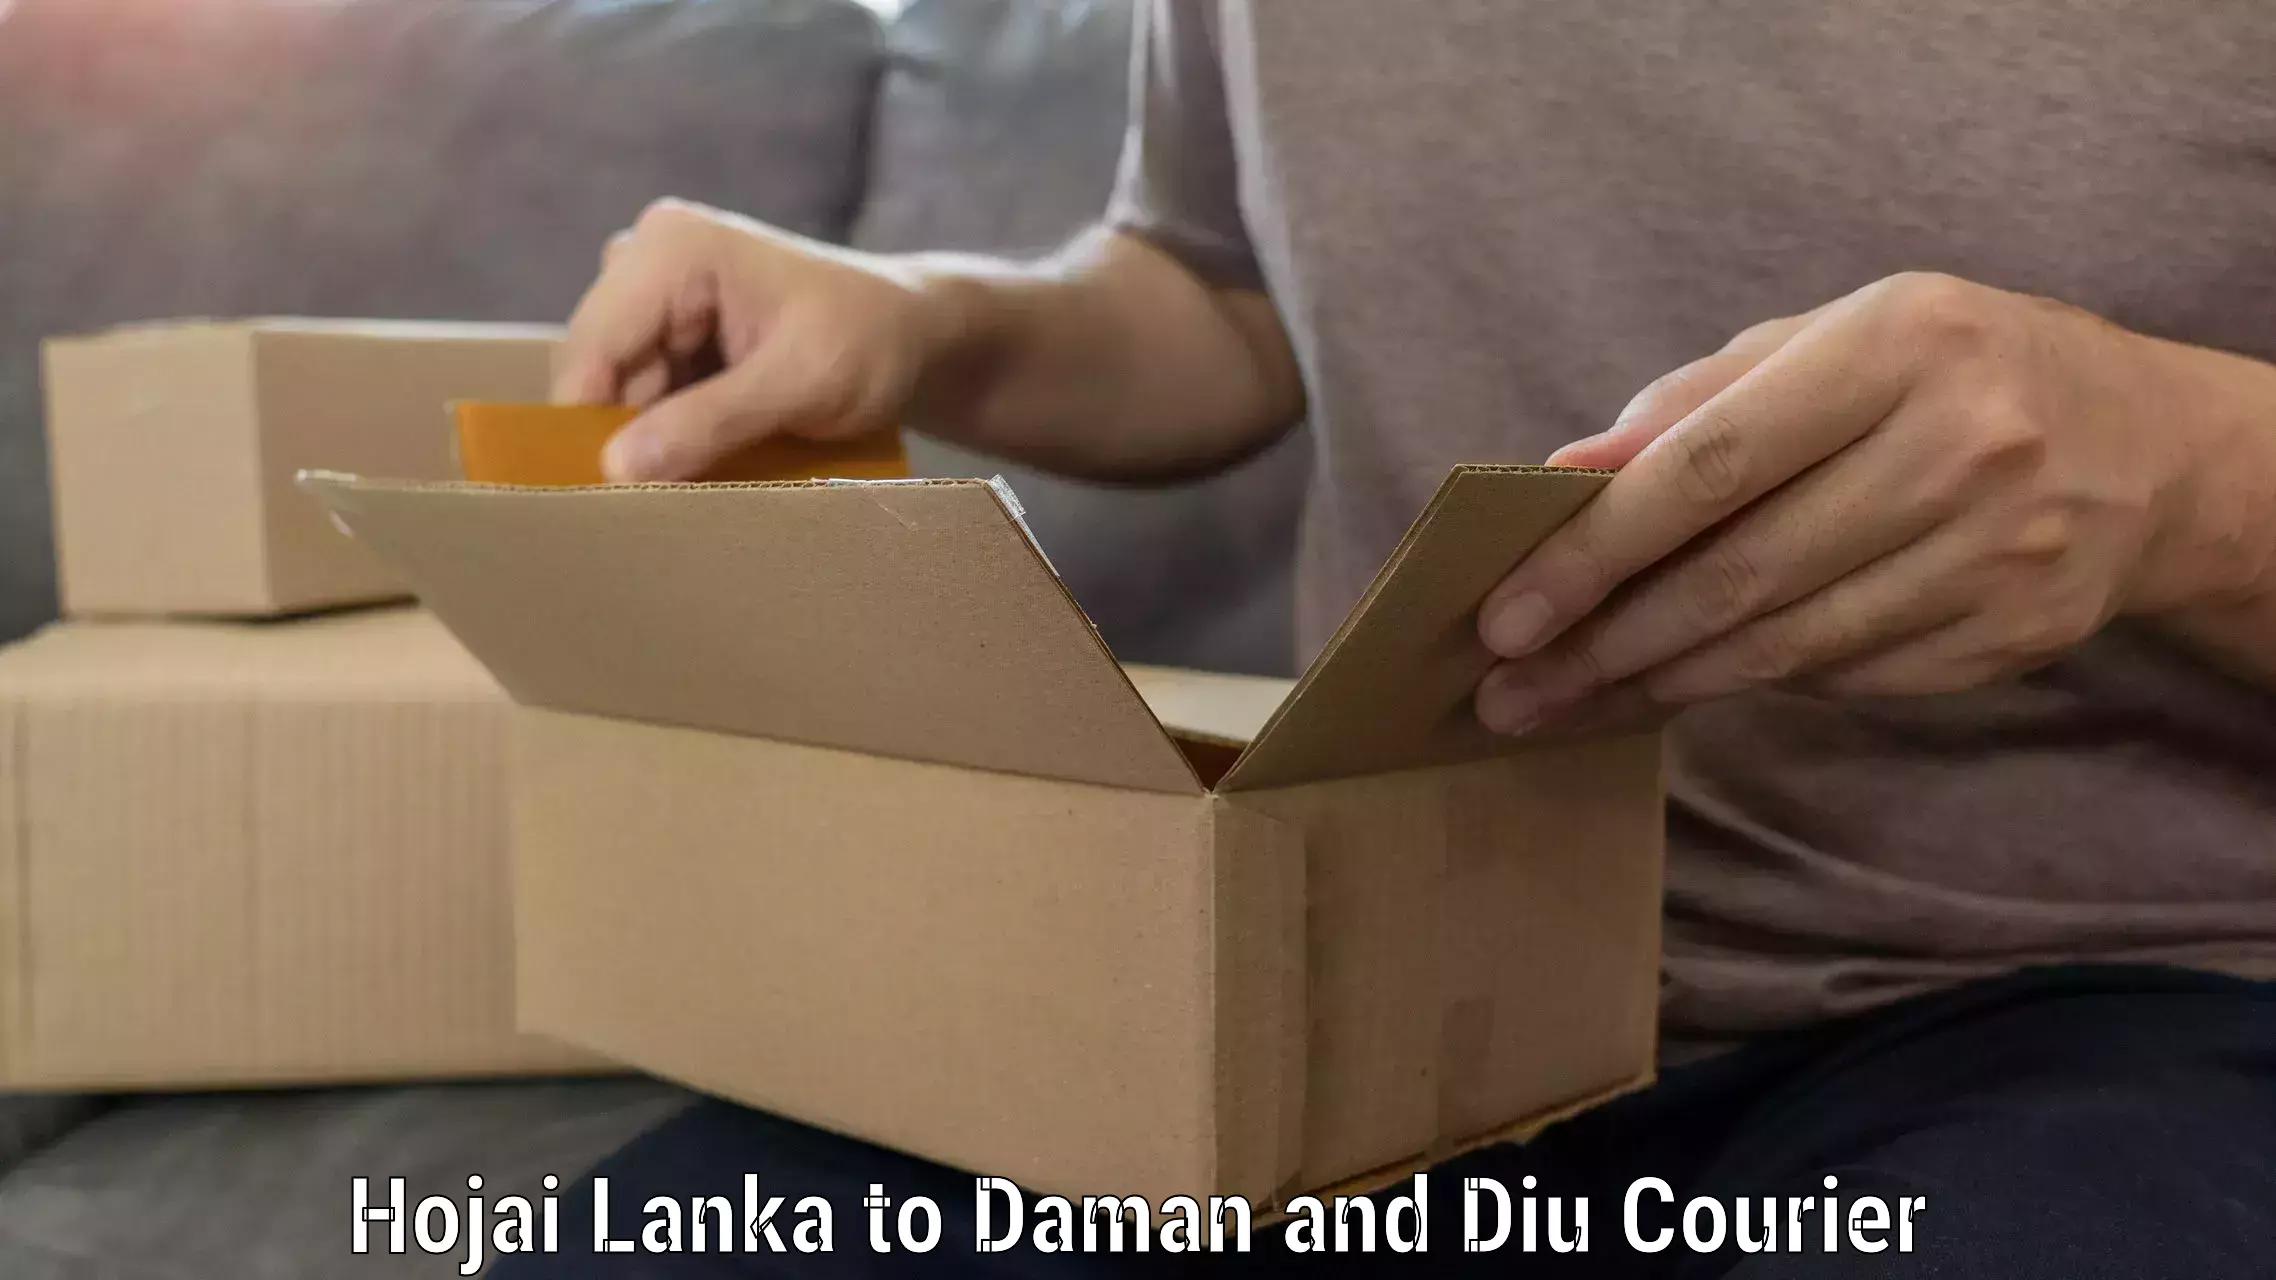 Furniture moving plans Hojai Lanka to Daman and Diu